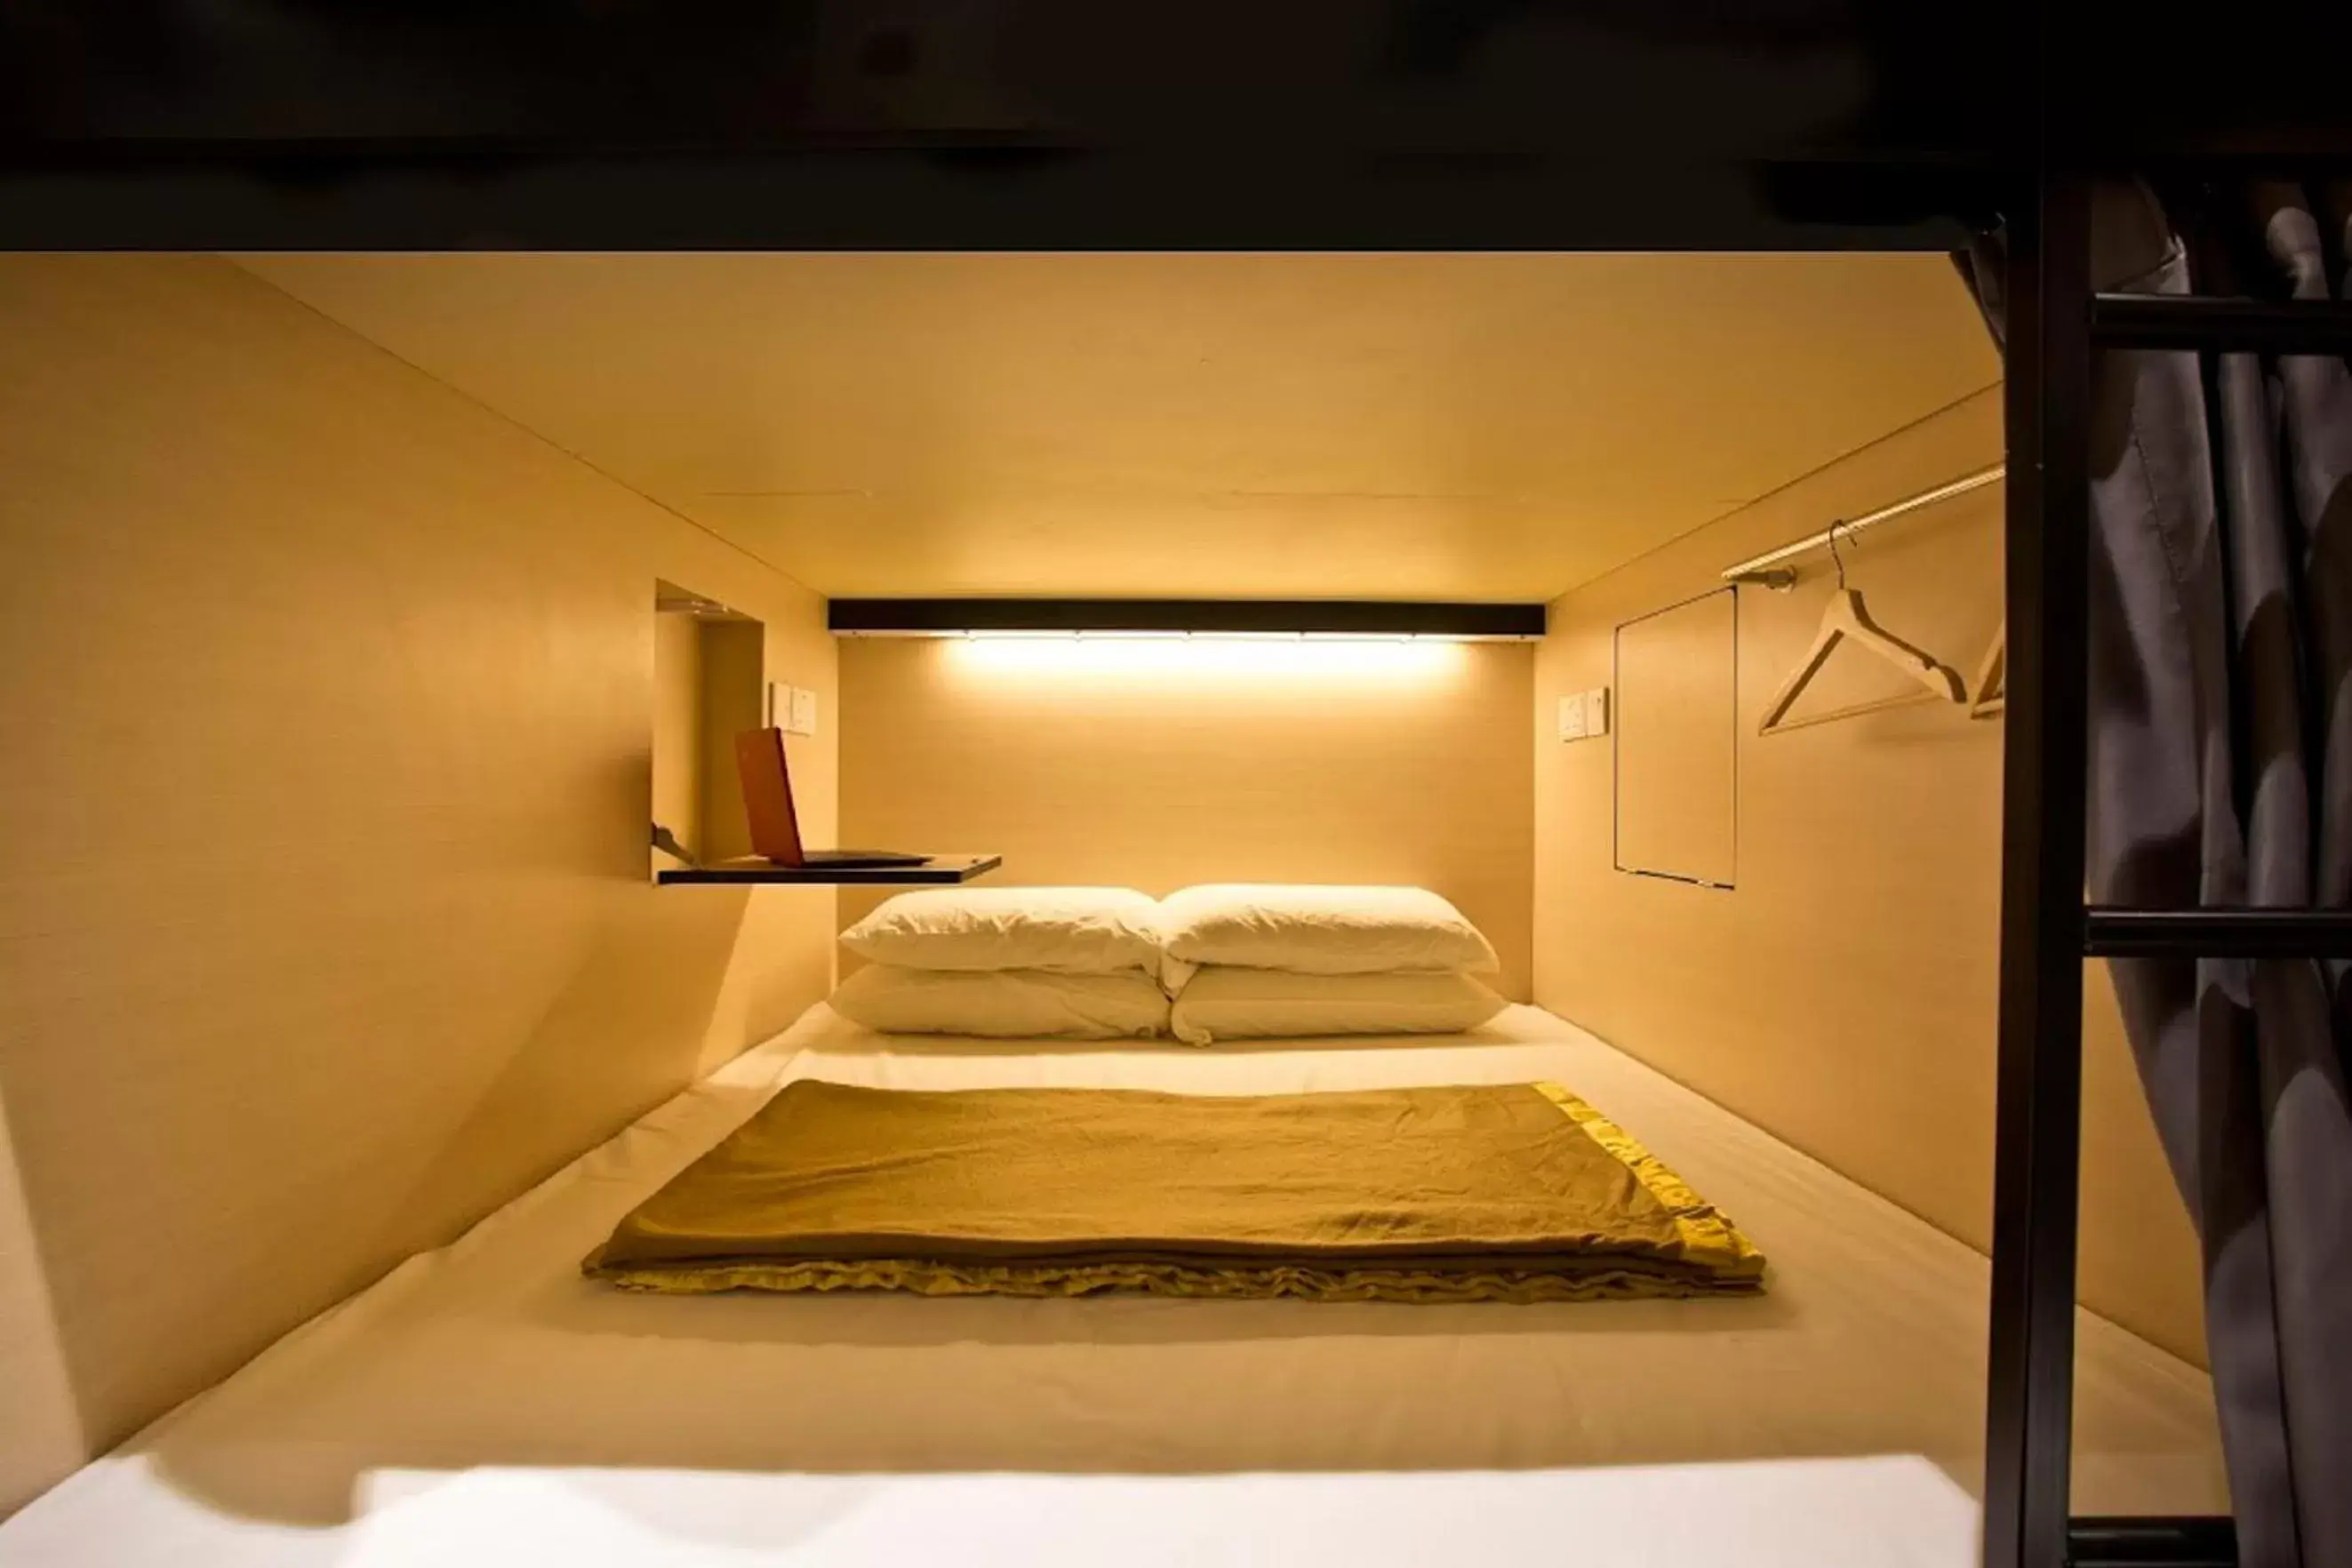 Bed, Room Photo in 7 Wonders Hostel